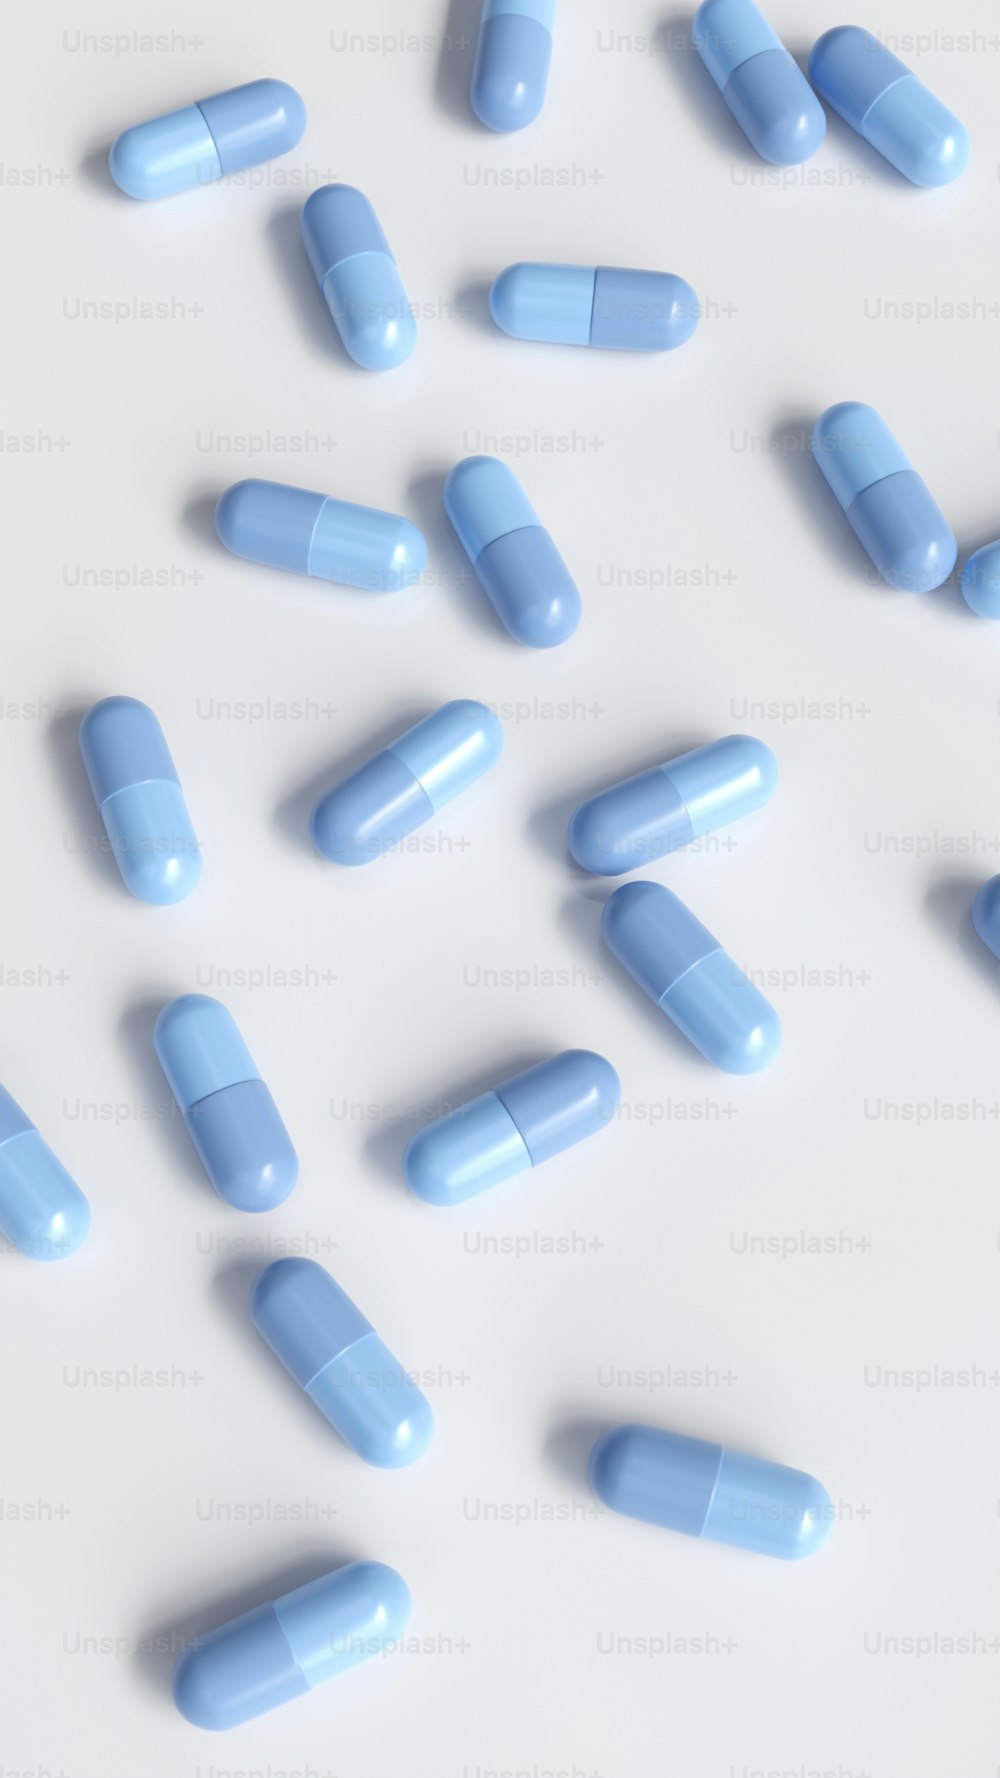 Blaue Pillen sind auf einer weißen Oberfläche verstreut